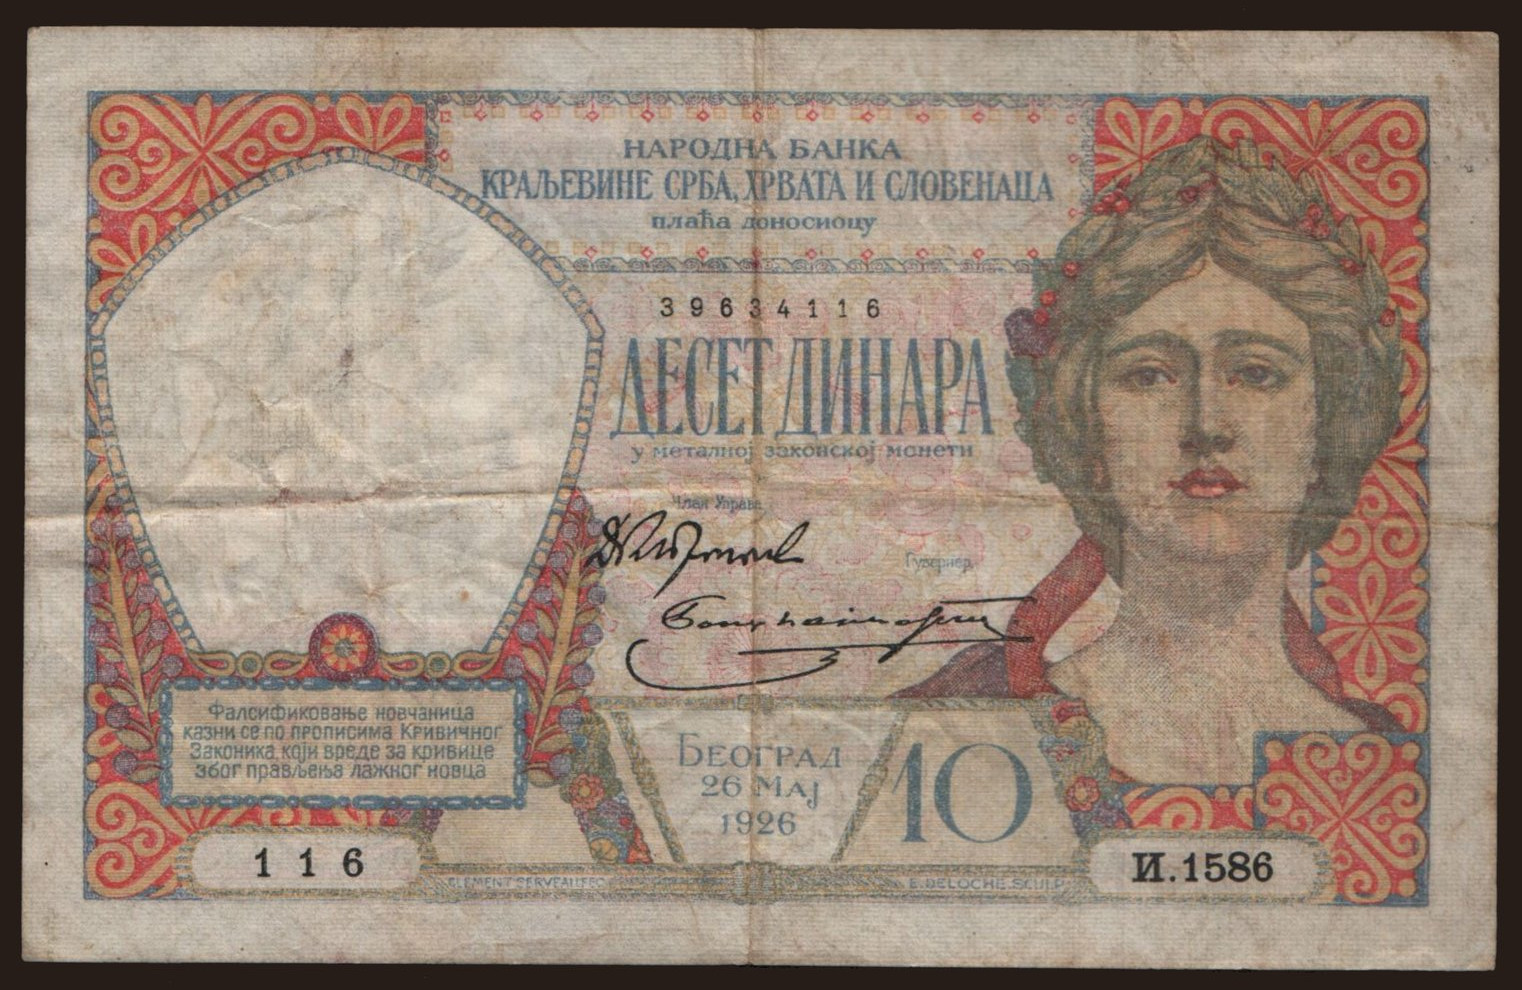 10 dinara, 1926